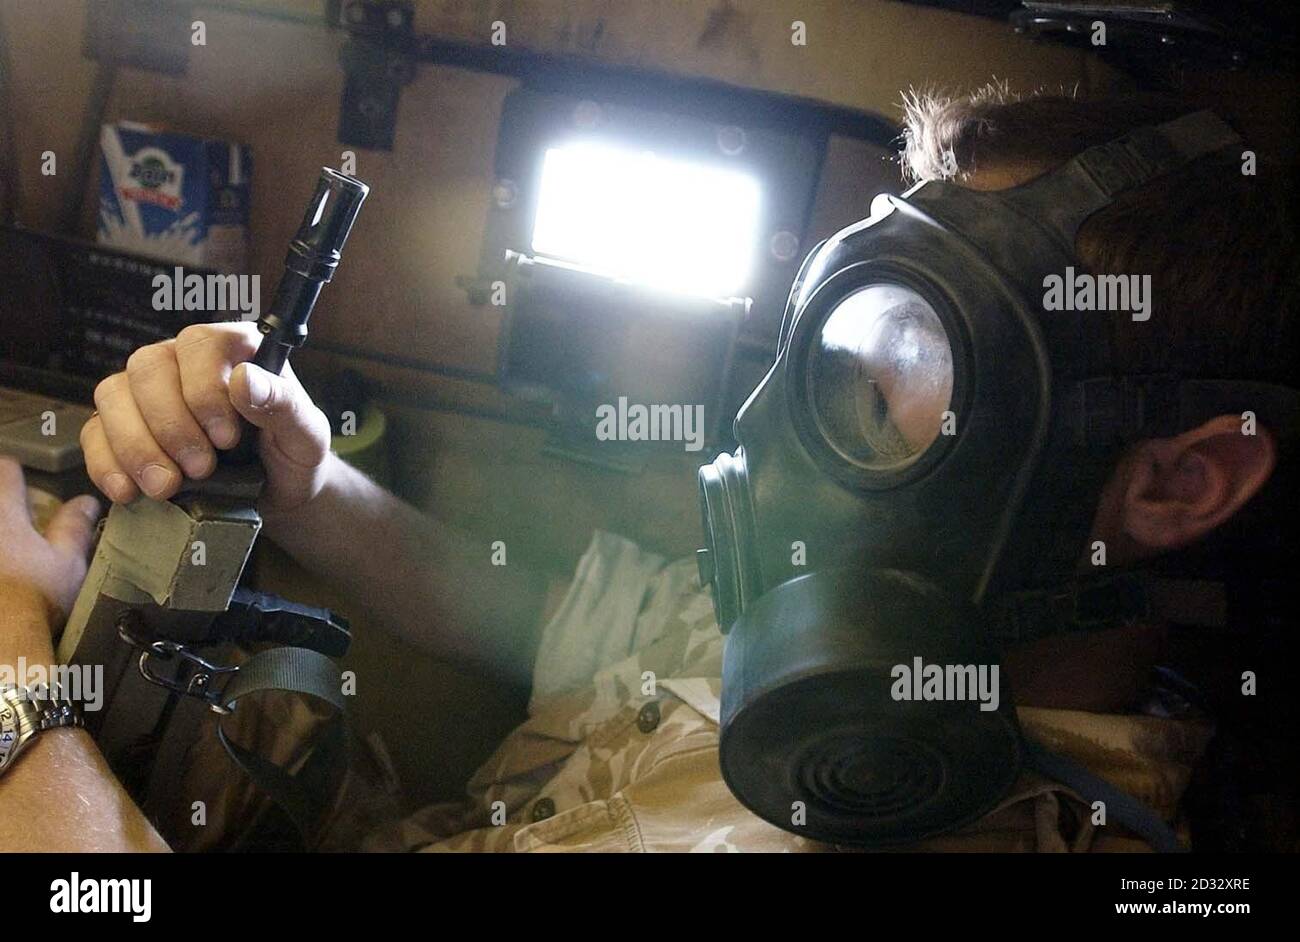 Un soldato britannico indossa un respiratore mentre si siede all'interno di un portatore di truppe spartane della 16a Brigata dell'assalto aereo durante un sospetto attacco di gas contro le forze di coalizione raccolte vicino al confine iracheno. Foto Stock